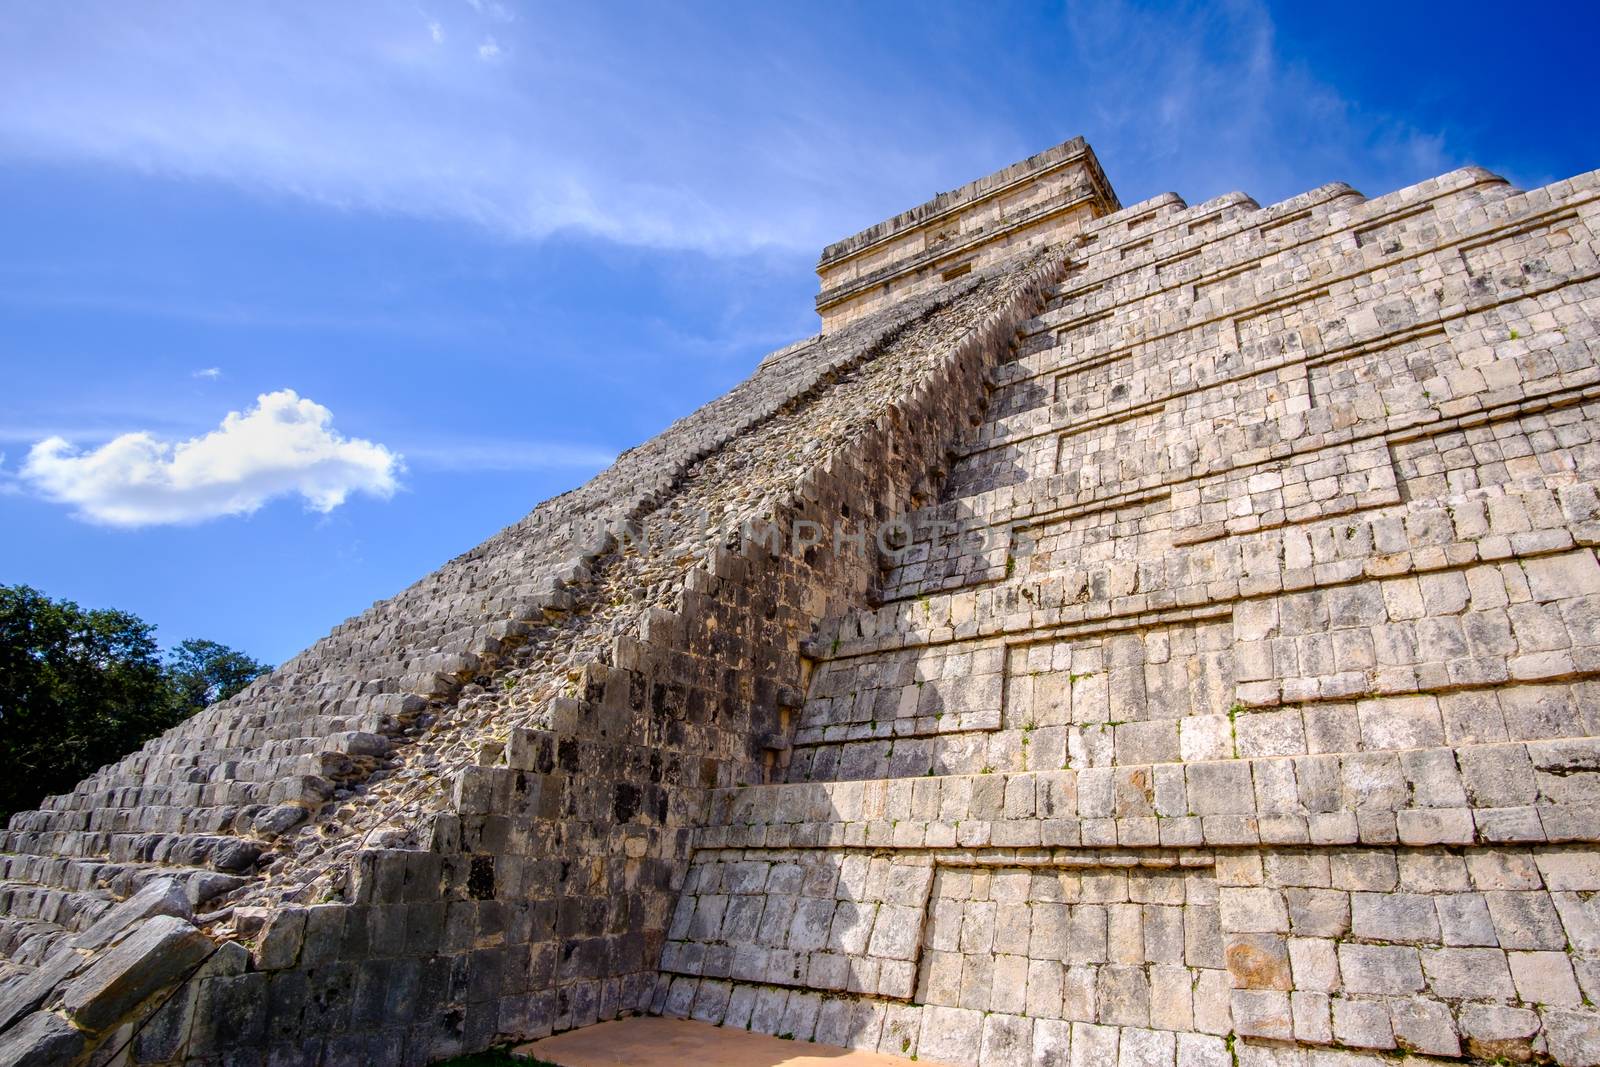 Scenic view of famous Mayan pyramid El Castillo in Chichen Itza, Mexico